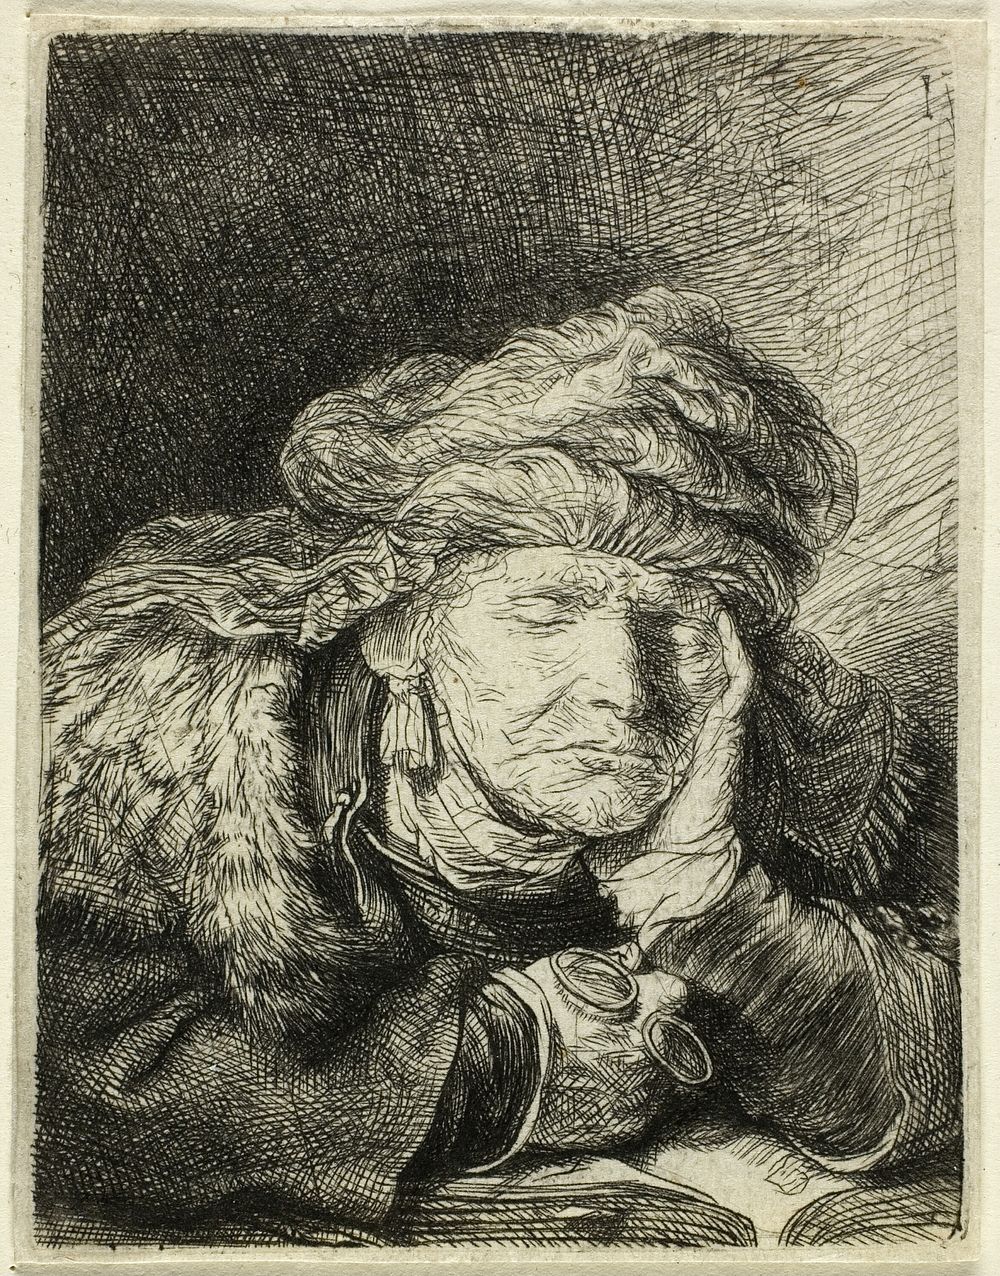 Old Woman Sleeping by Rembrandt van Rijn